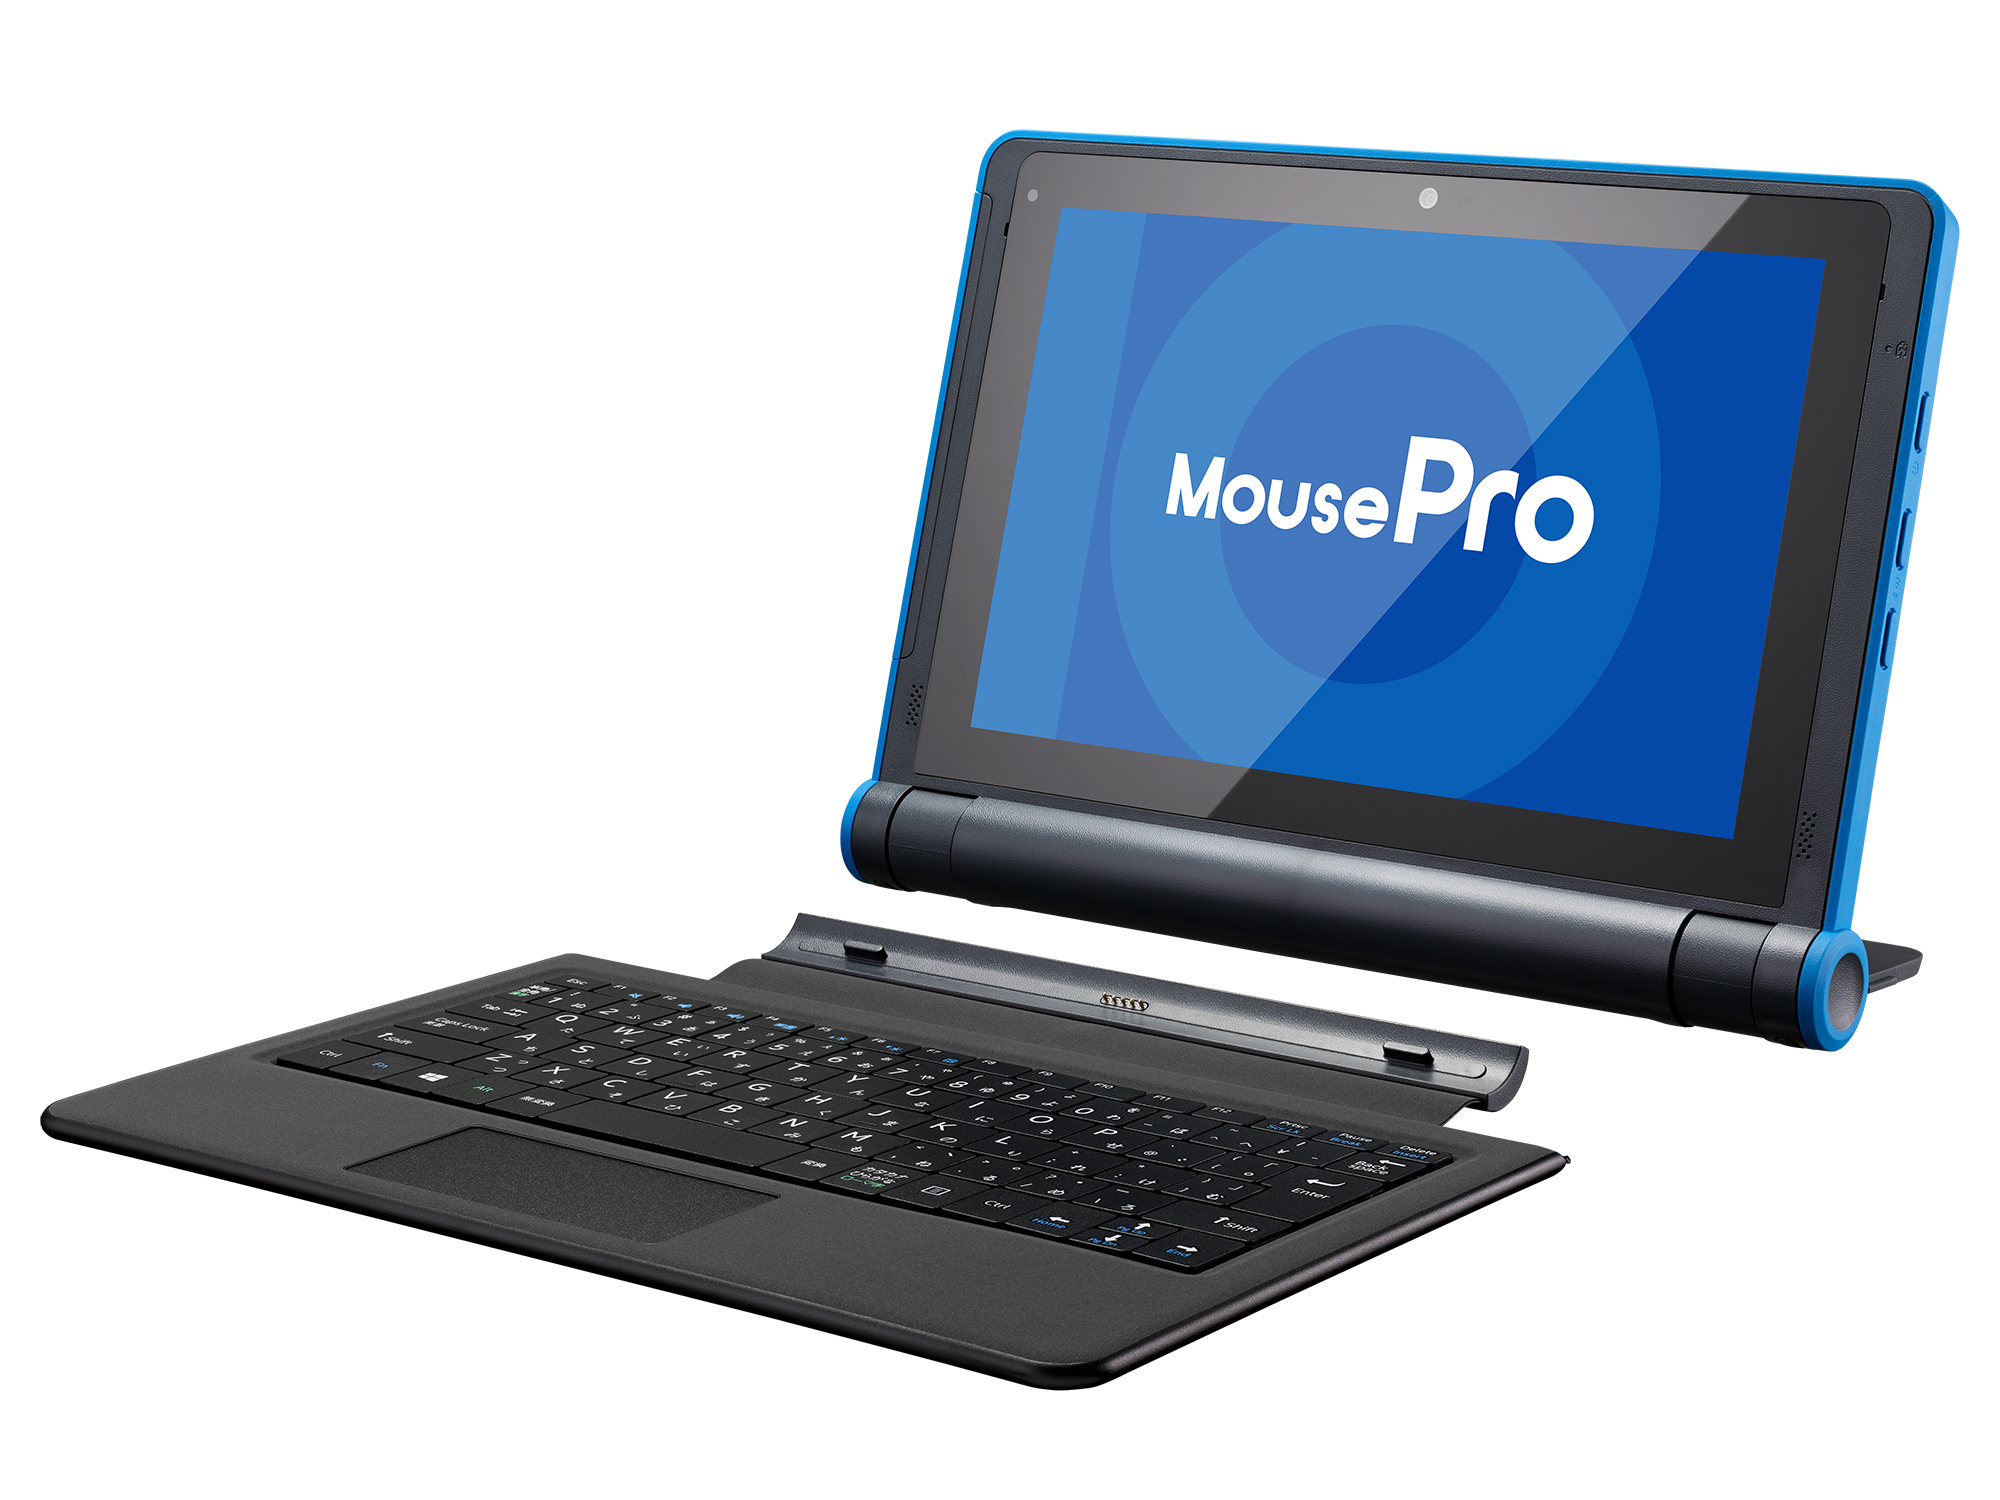 Windowsタブレット 本体重量は約383g軽くて持ち運びに超便利 マウス 